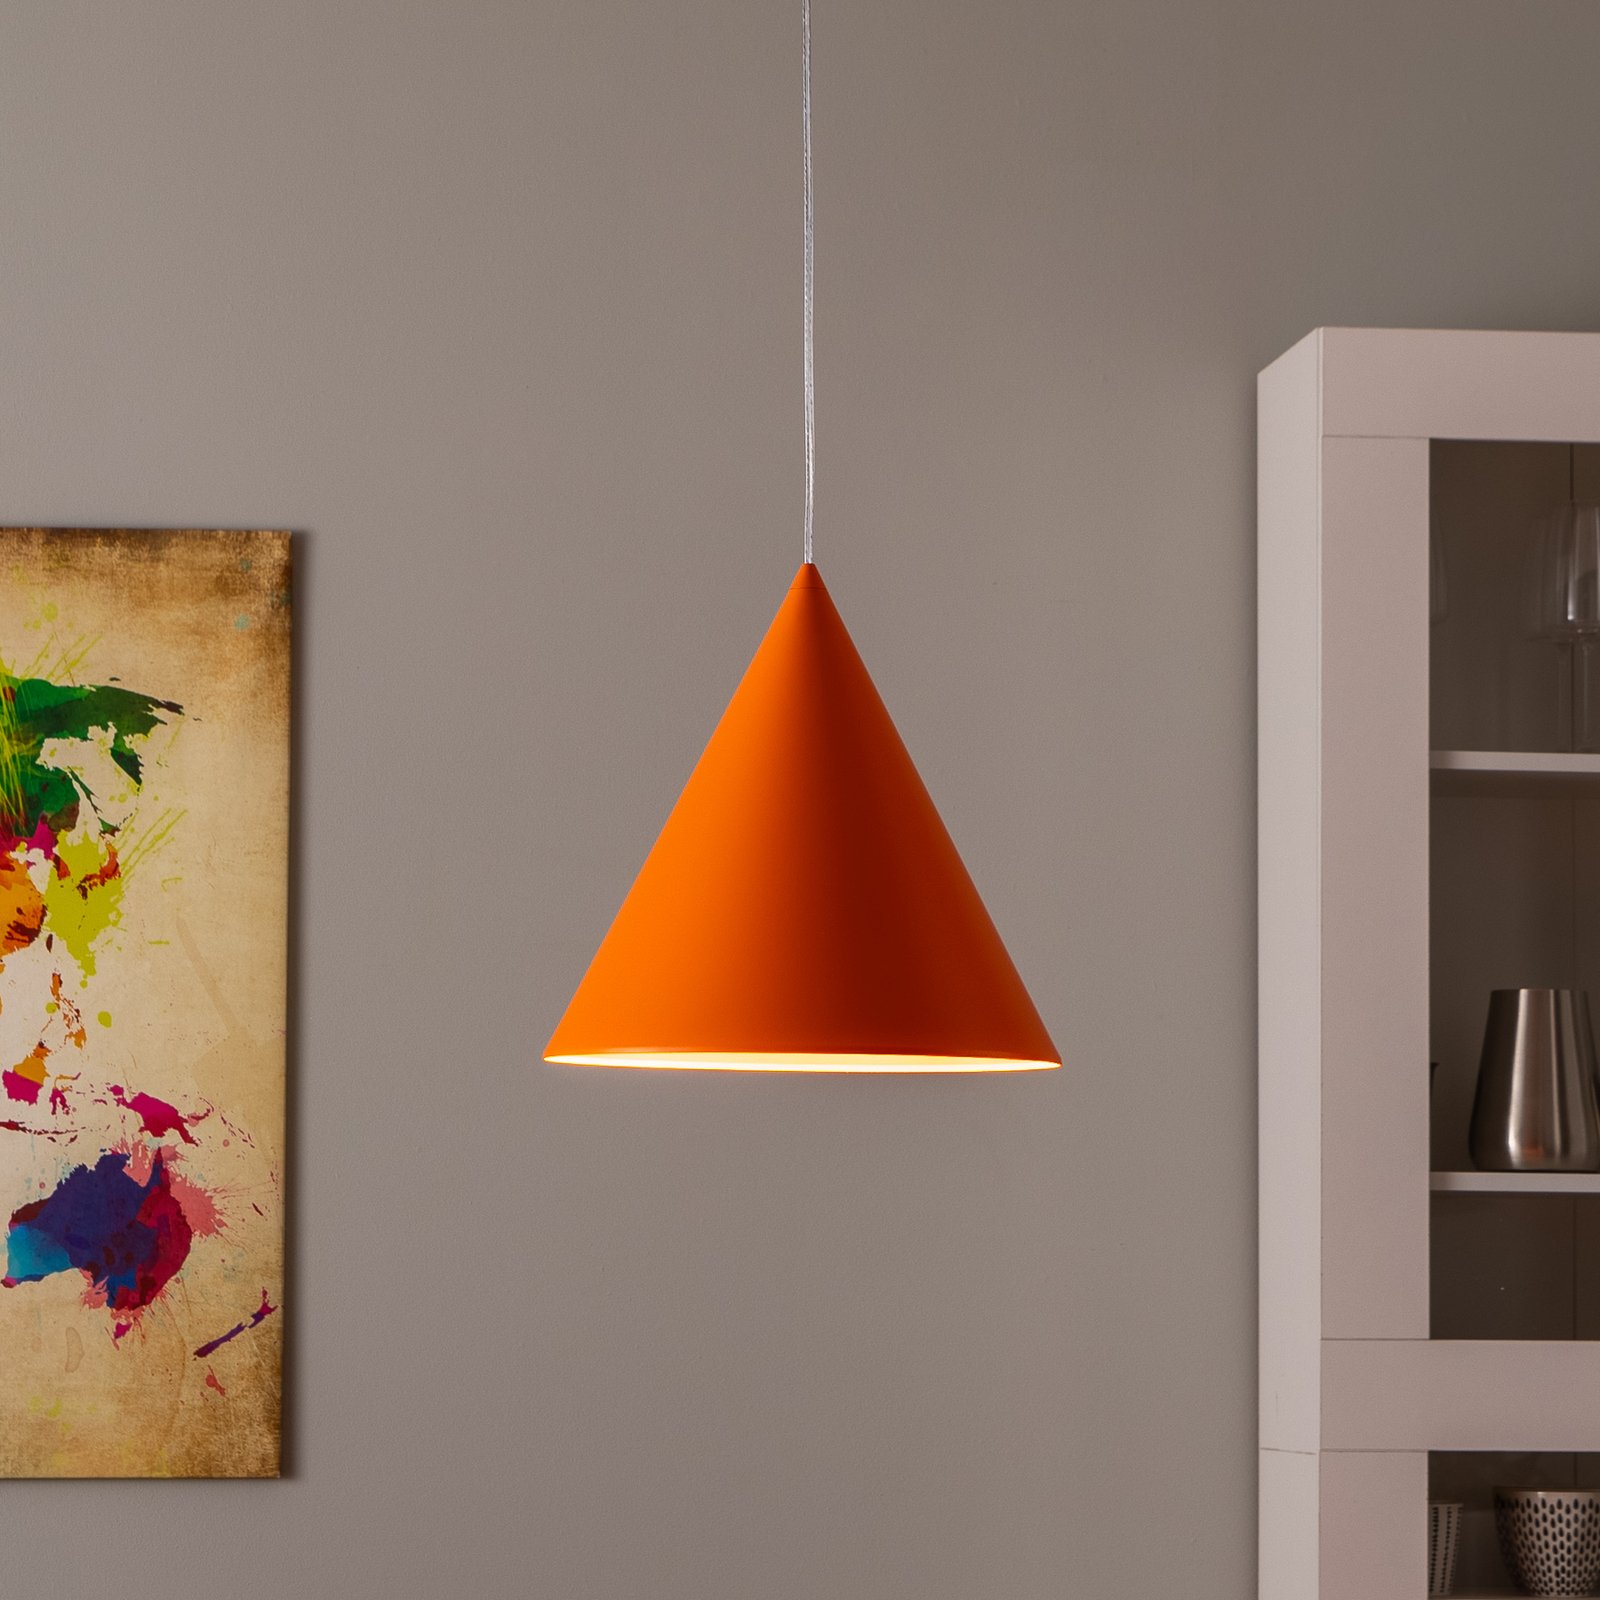 Viseća lampa Cono, jedna žarulja, Ø 32 cm, narančasta